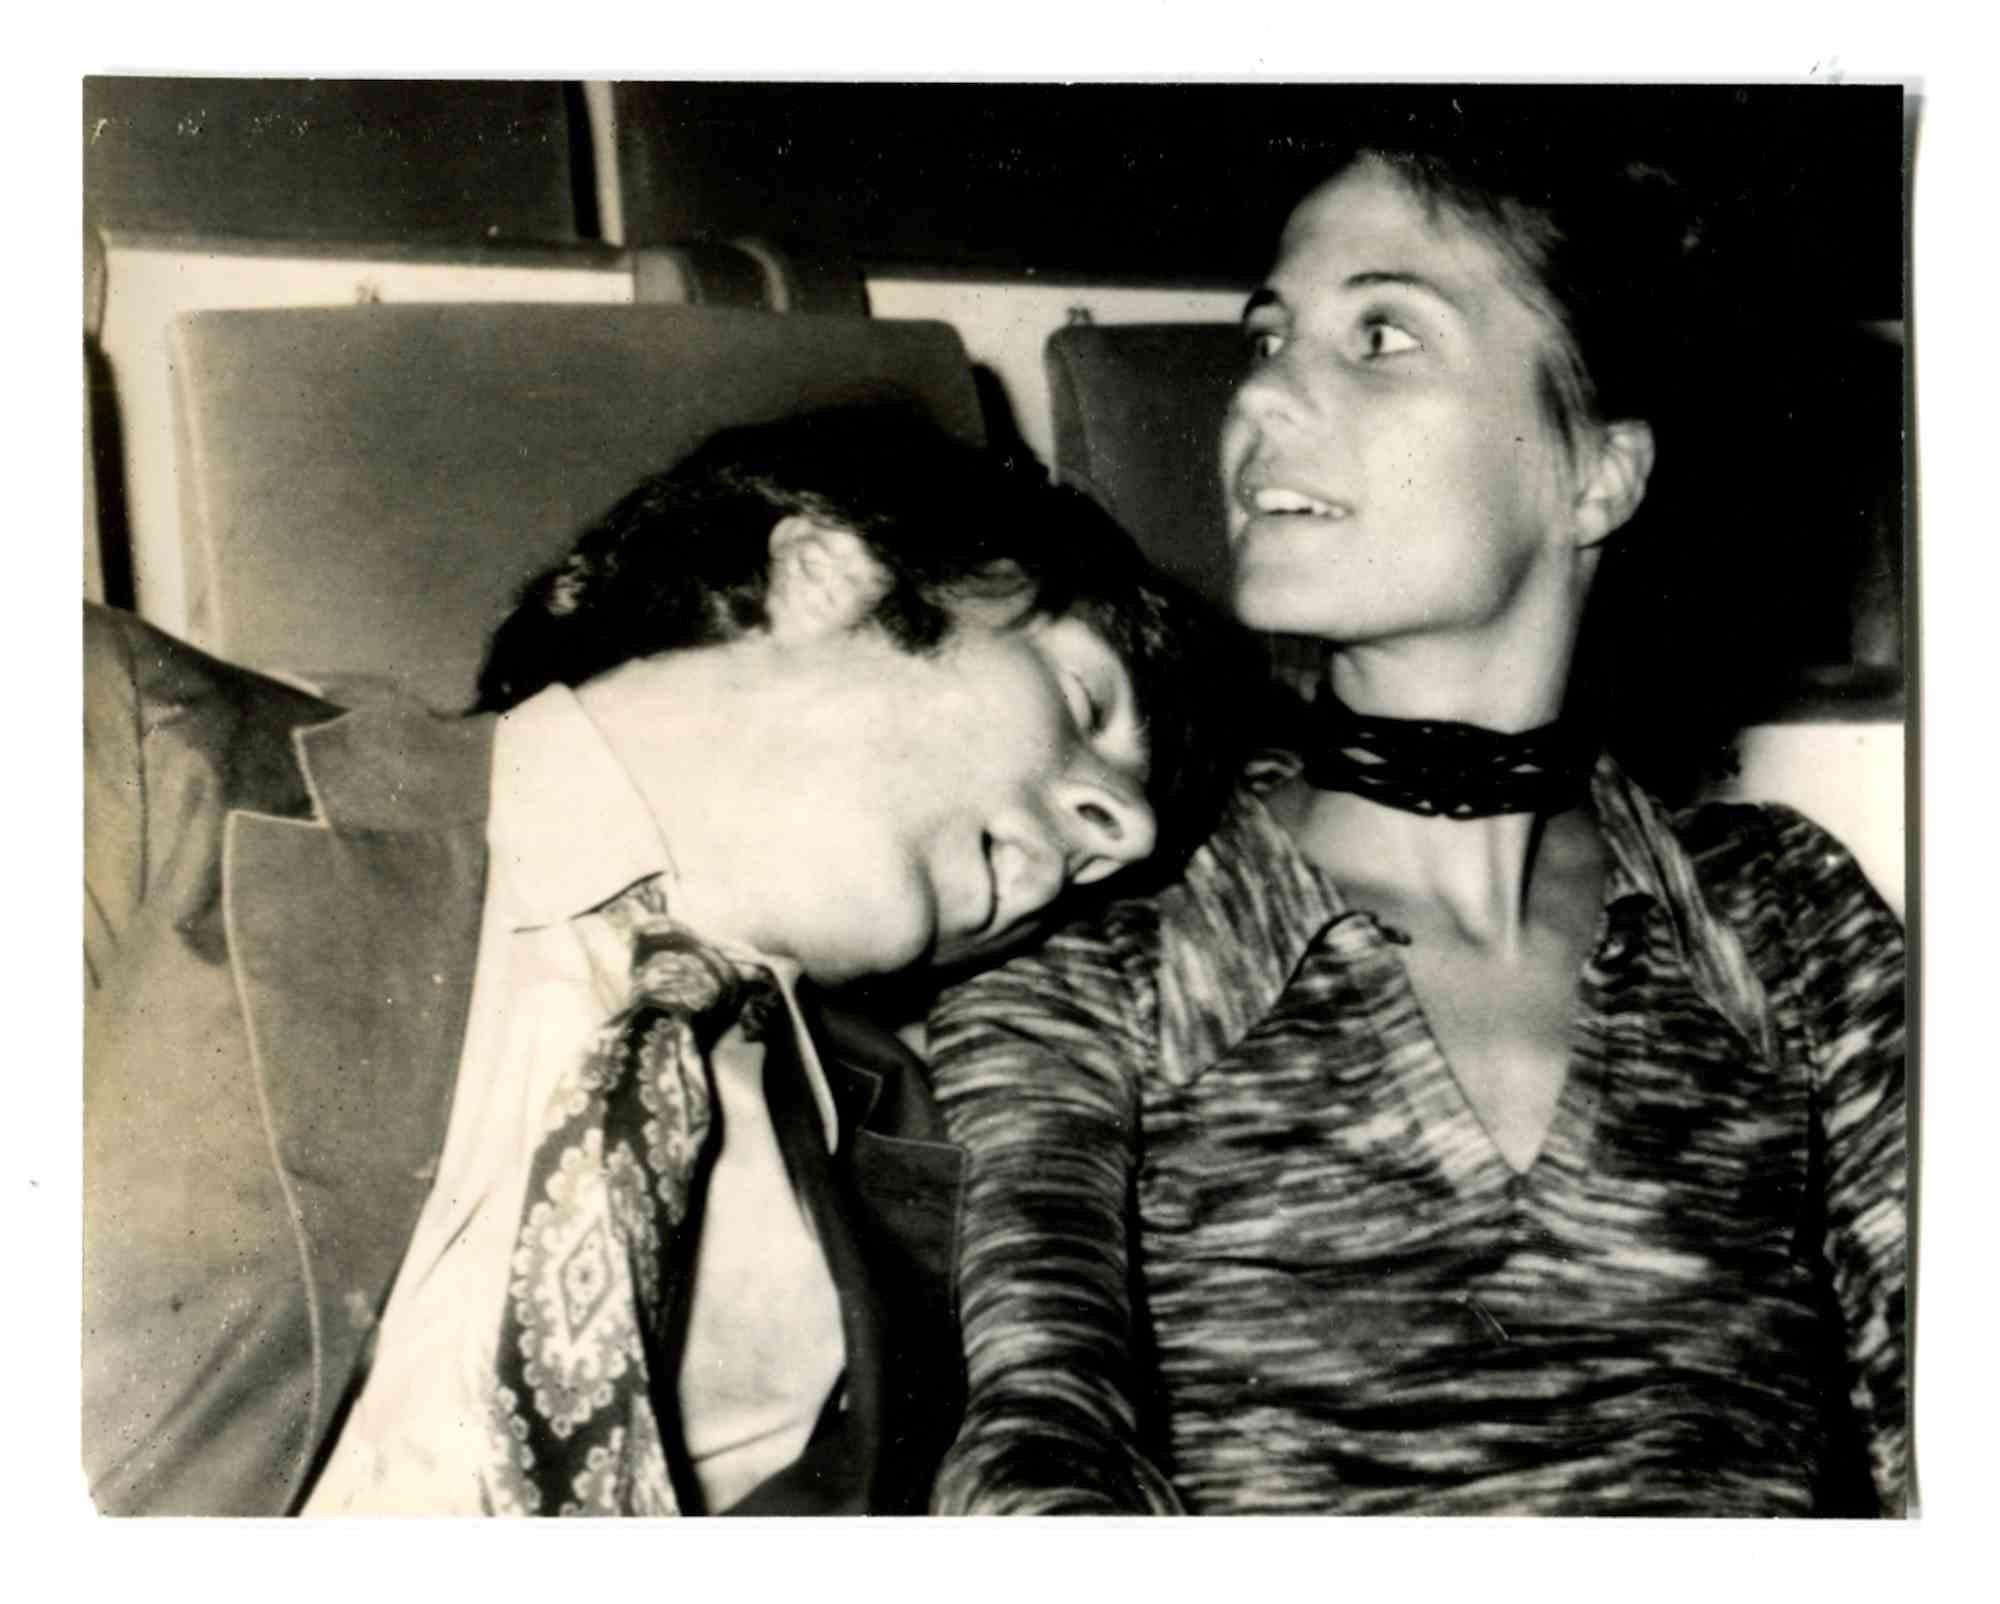 Dustin Hoffman - Foto de época - Años 70